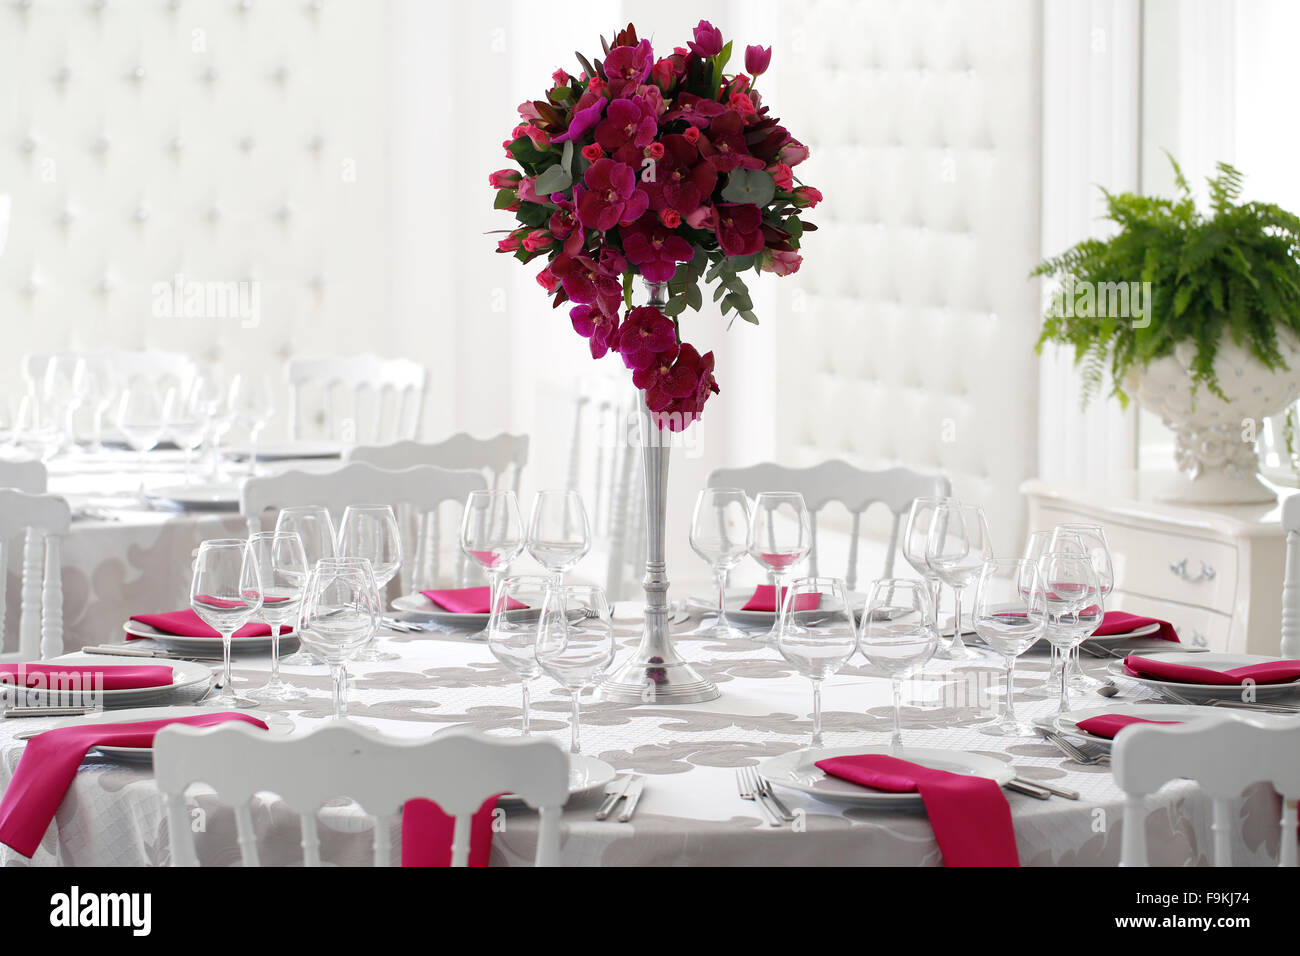 Belle décoration de mariage bouquet de fleurs sur table Photo Stock - Alamy